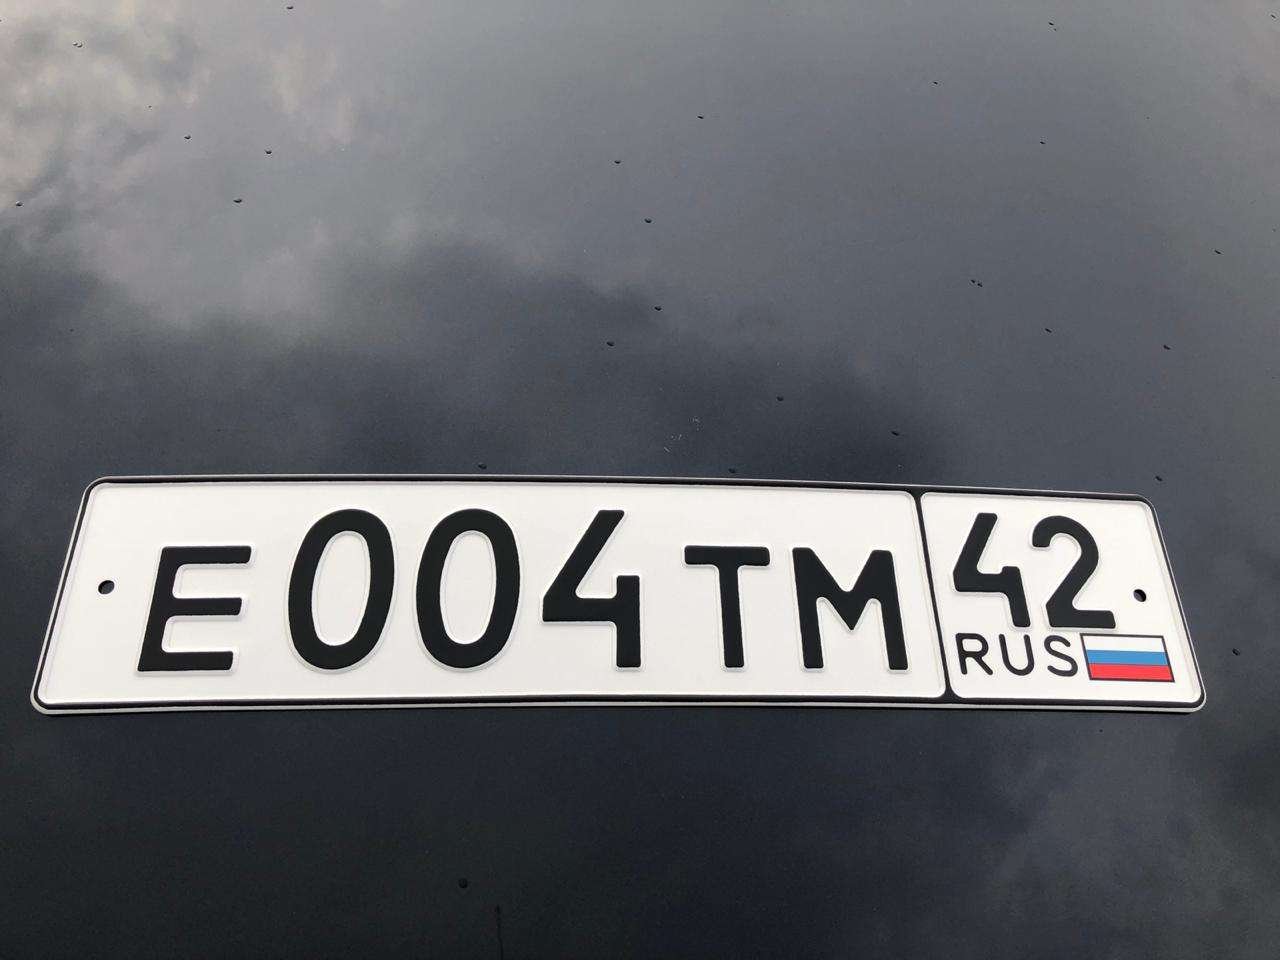 Гос номер автомобиля московская область. Автомобильные номера. Гос номер. Гос номер машины. Государственный номерной знак.